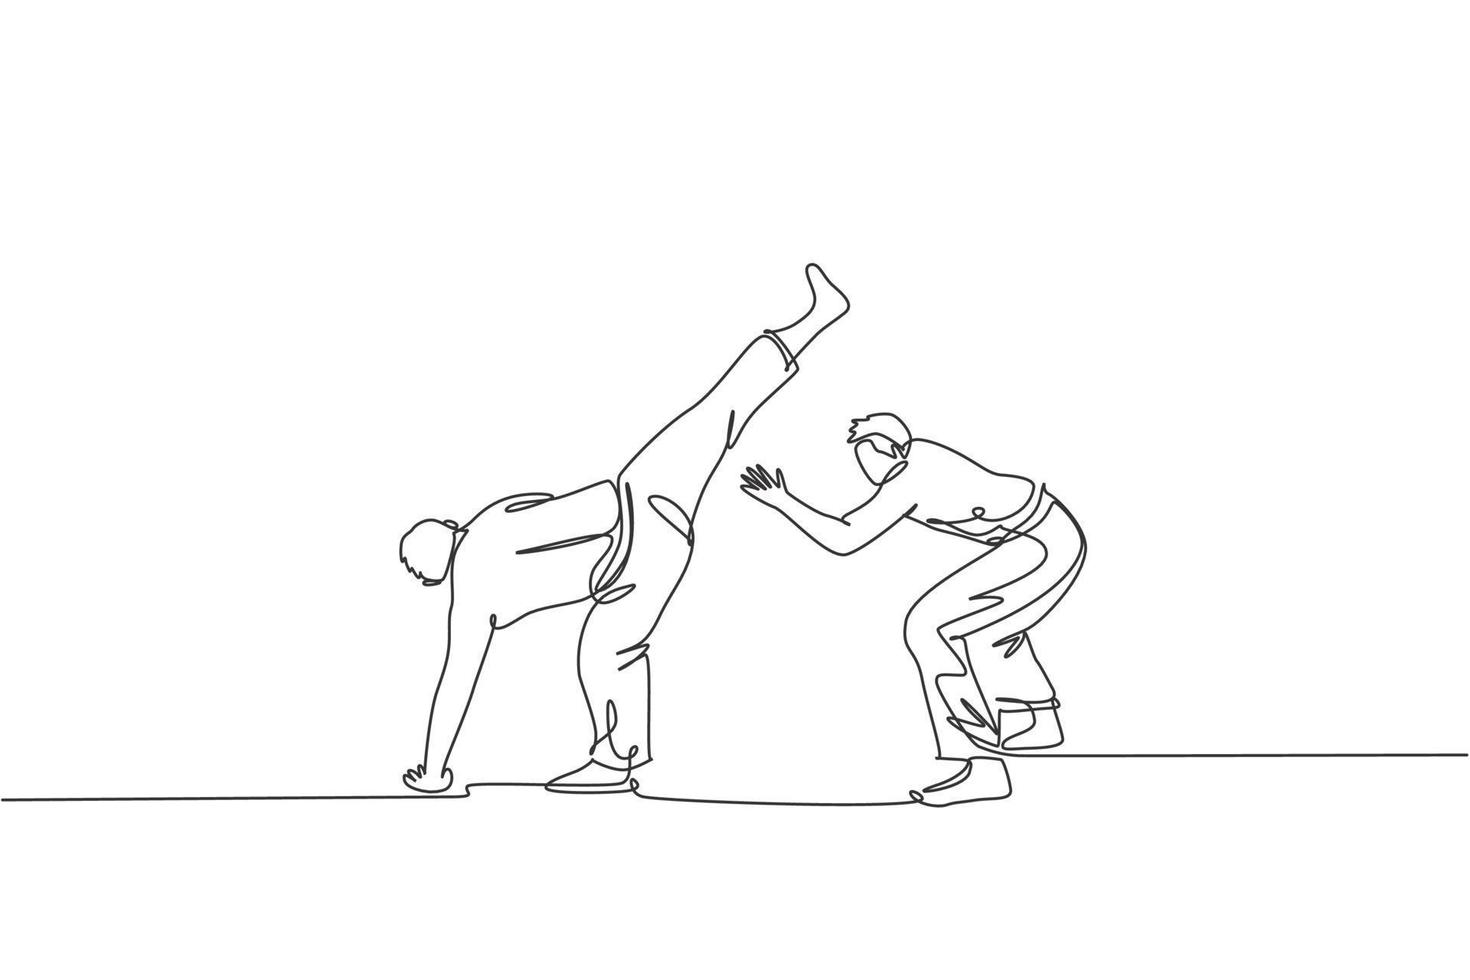 en kontinuerlig linjeteckning av två unga sportiga brasilianska fightermän som tränar capoeira på stranden. hälsosam traditionell kampsport koncept. dynamisk enda rad rita design vektorillustration vektor